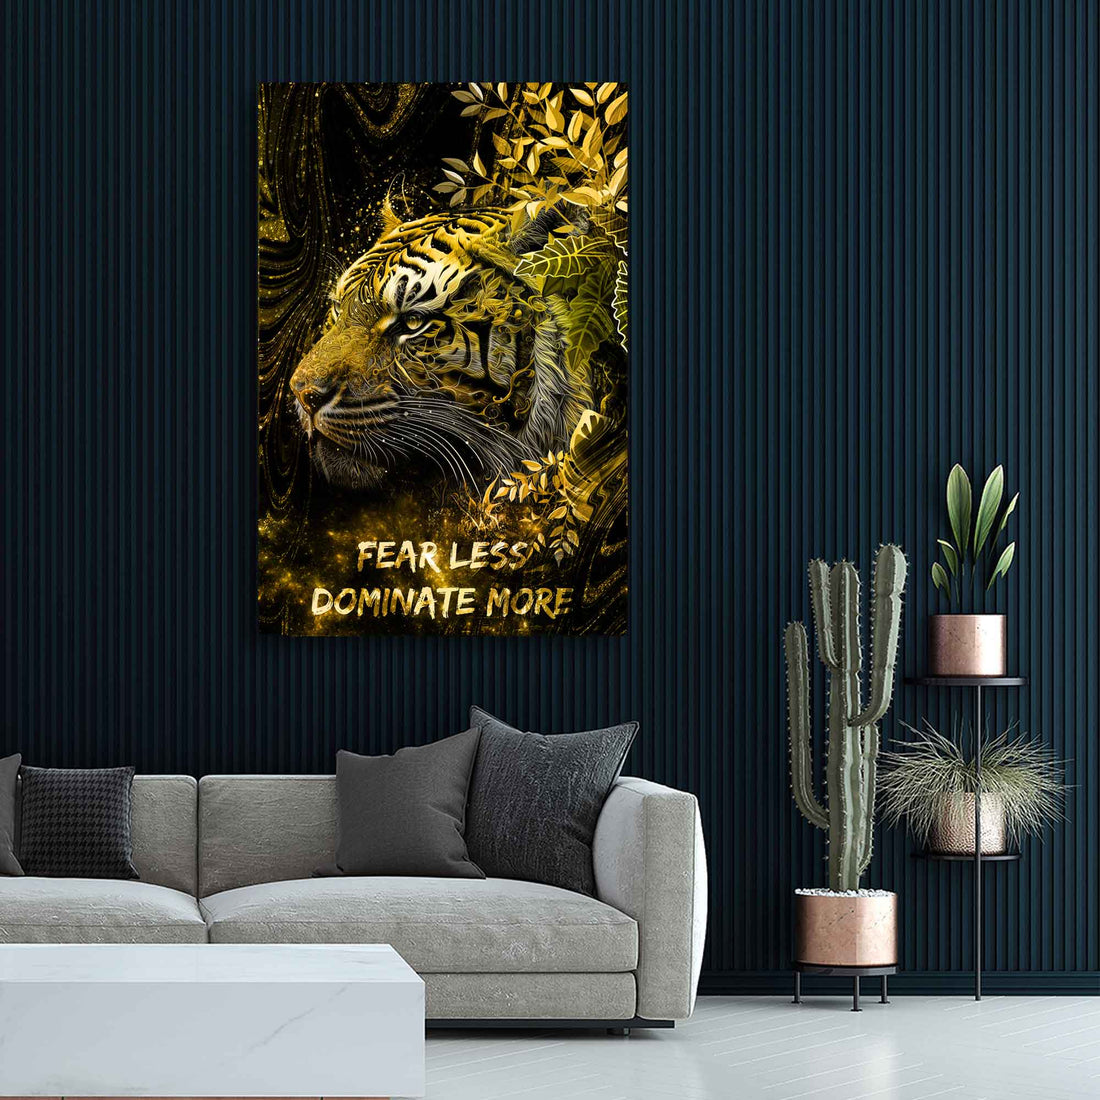 Wandbild Motivation Tiger Fearless